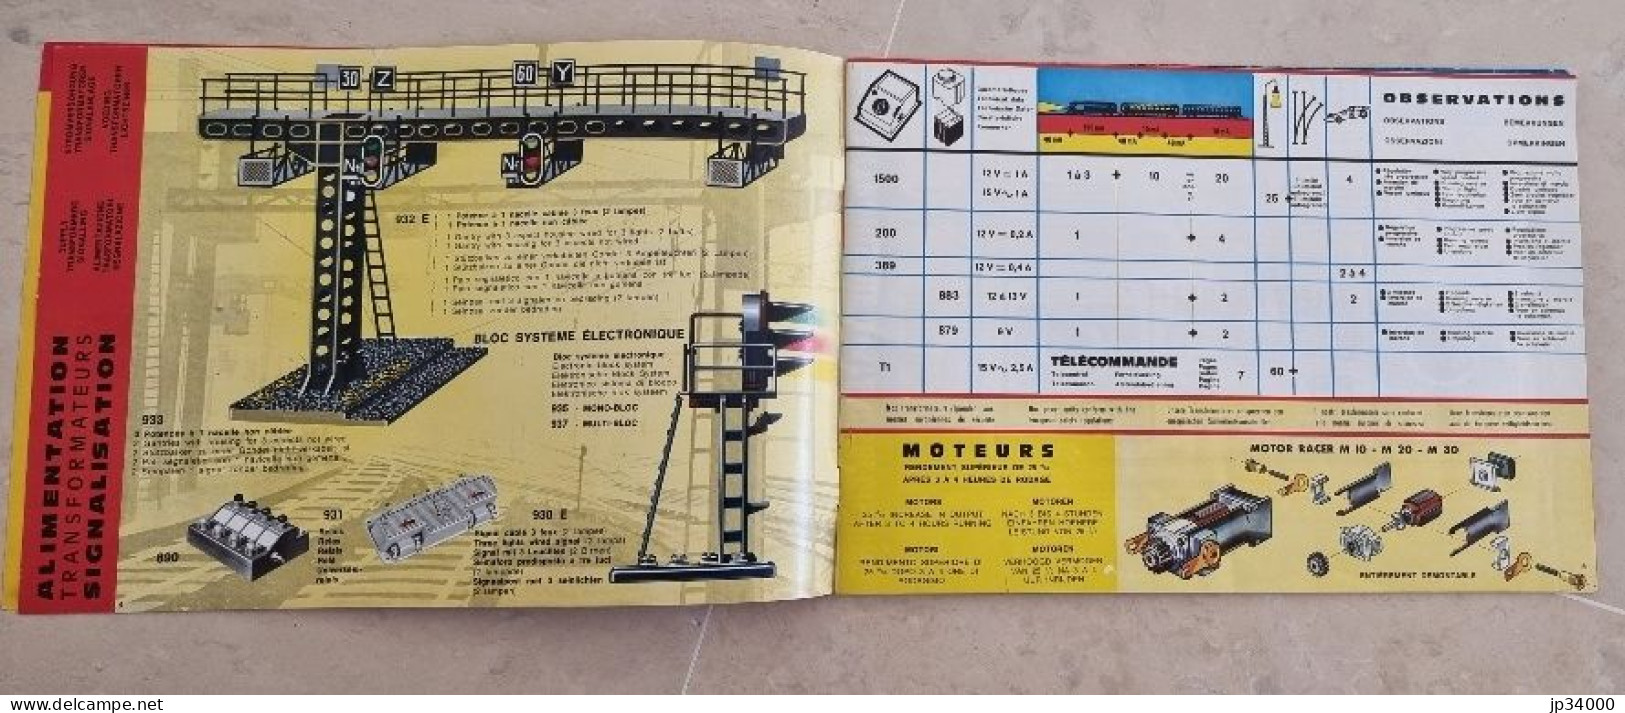 TELECOMMANDE ELECTRONIQUE (Jouef HO) Complet 32 Pages, 1969-70 (Trains Electriques) - Literatur & DVD